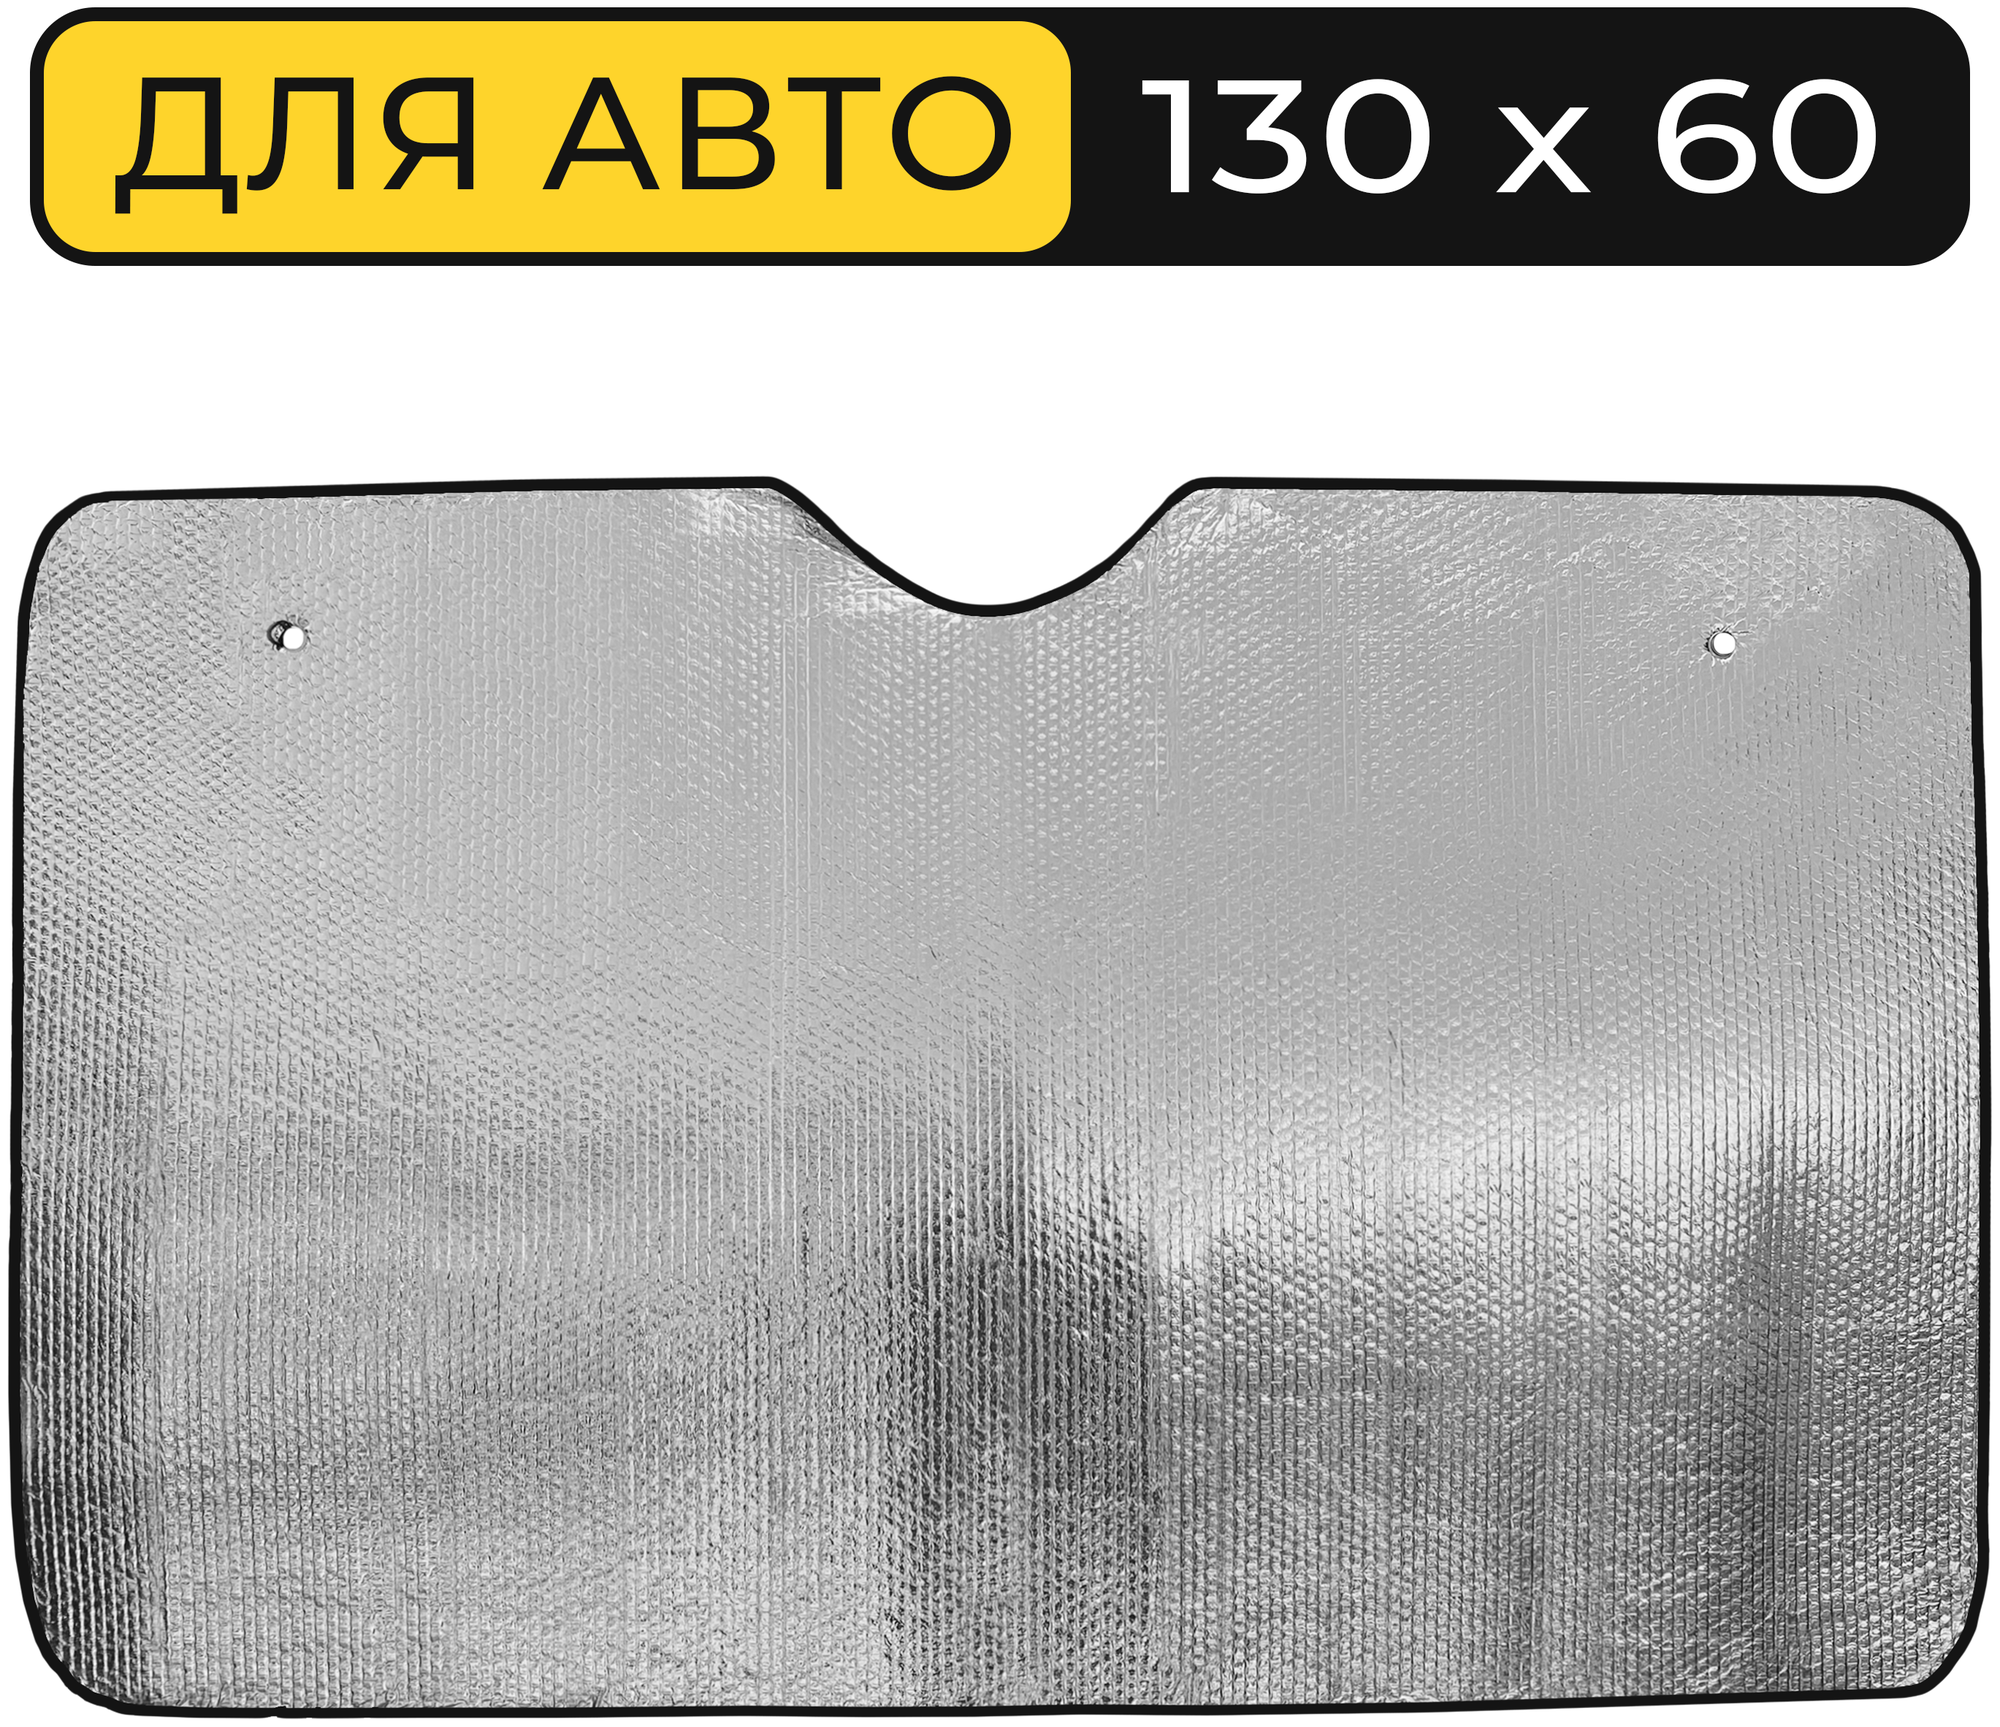 Шторка солнцезащитная на лобовое стекло Автостор LW-2100 (130х60 см), фольга, серебристая